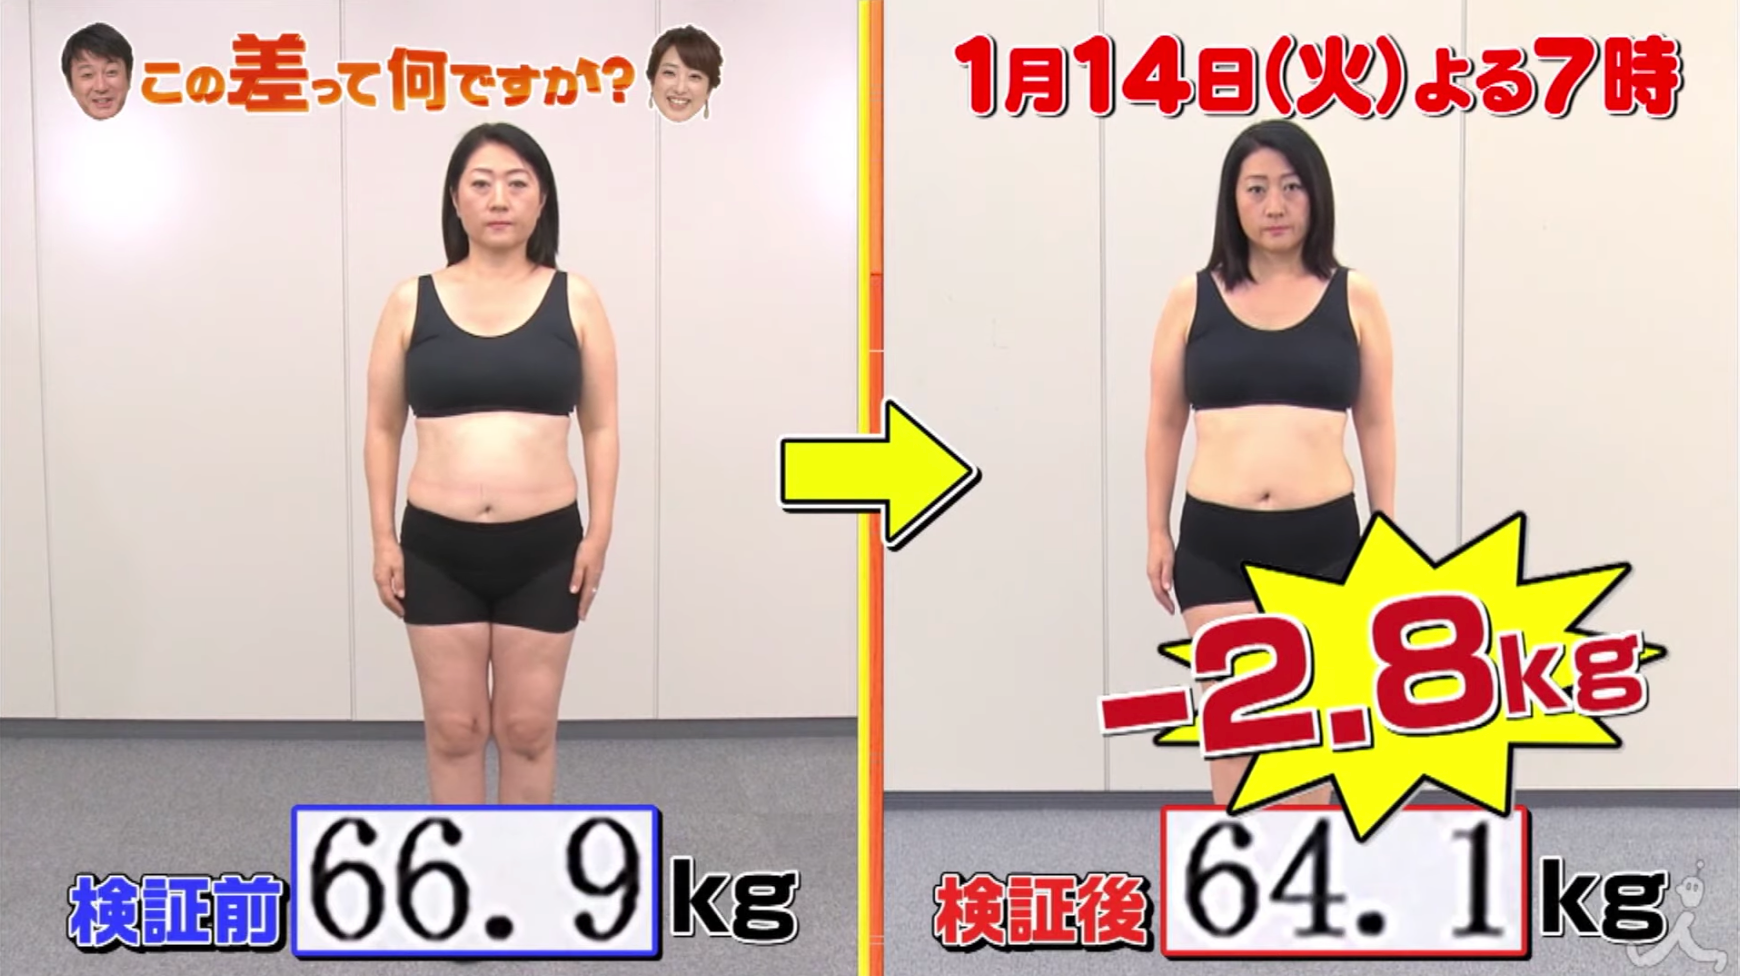 で 2 痩せる 週間 まずは３キロ！２週間で確実に痩せるダイエット方法 (2021年6月5日)